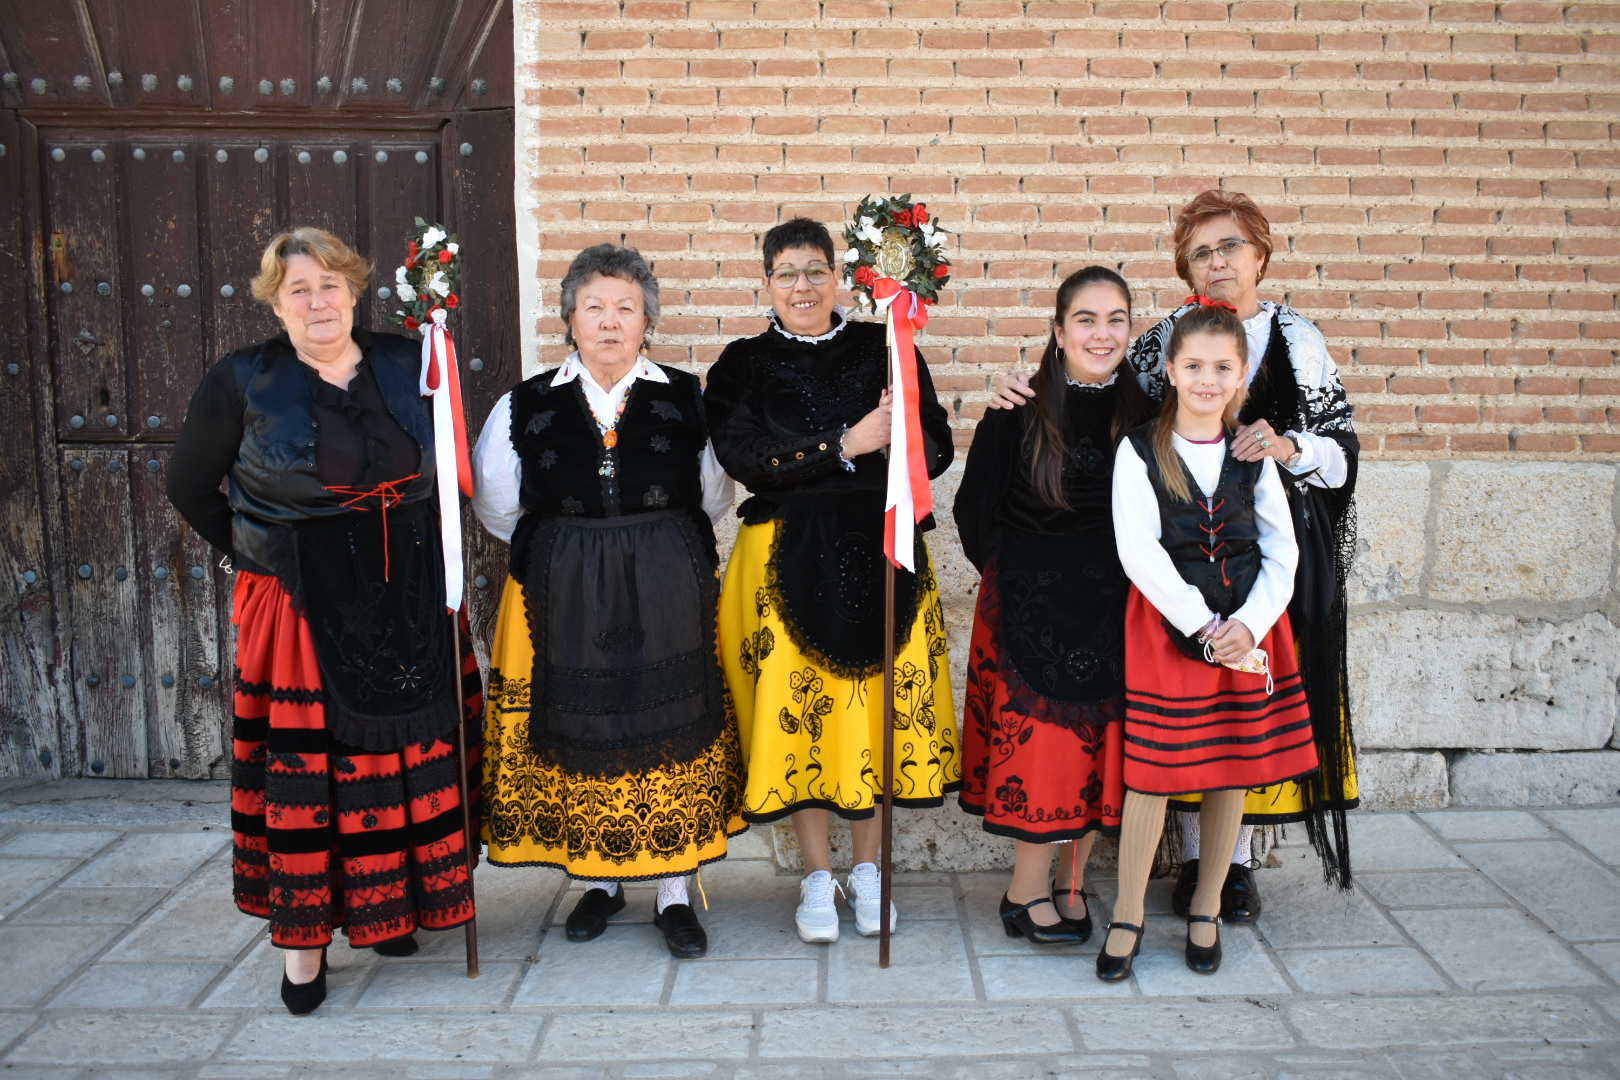 La cofradía de Santa Águeda en Villanueva de Duero, una tradición centenaria